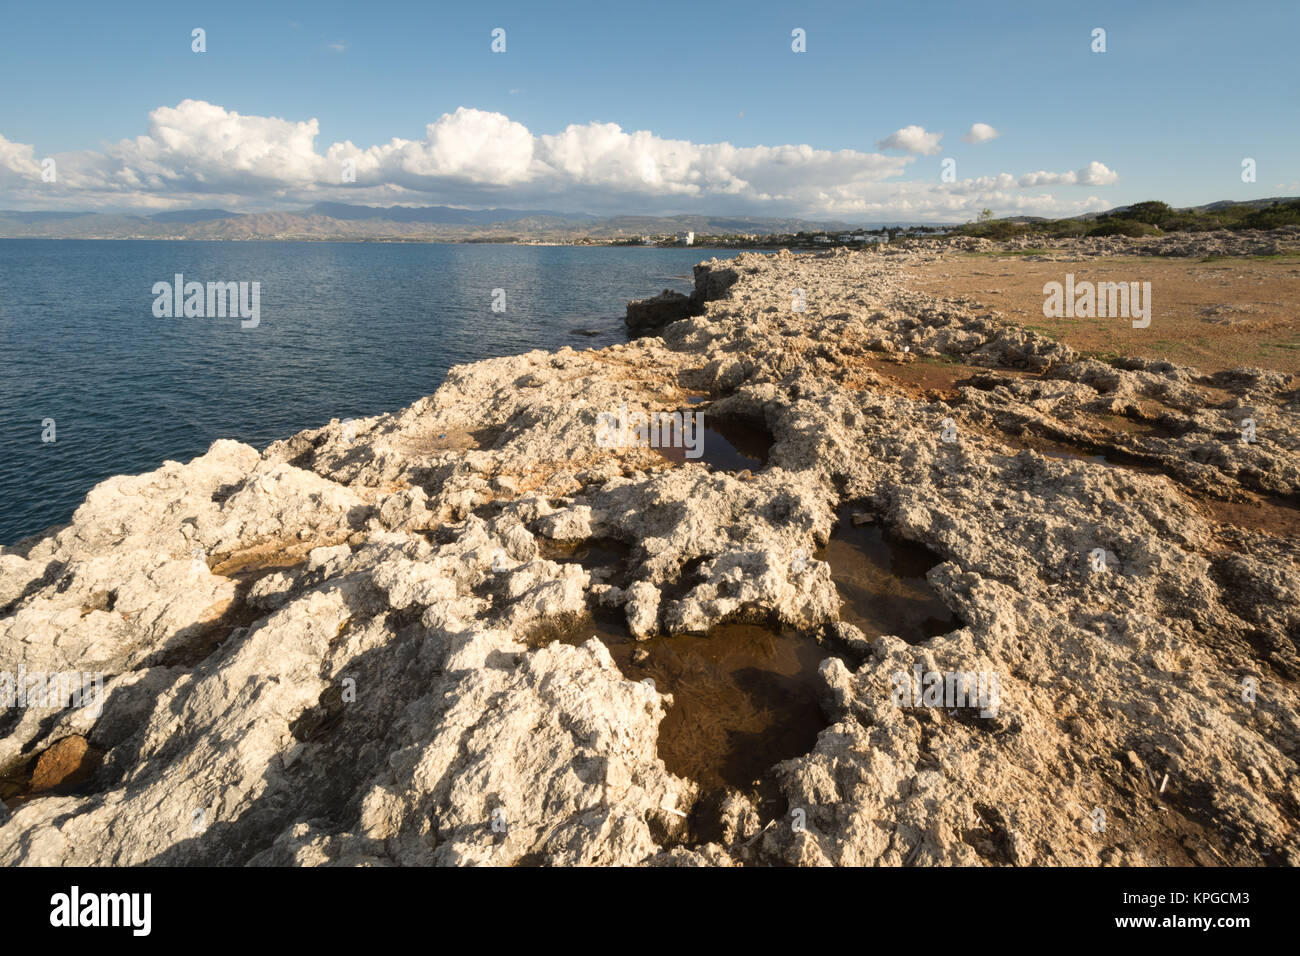 Paesaggi di pietra calcarea con piscine di roccia accanto al mare nei pressi di Latchi in Cipro Foto Stock